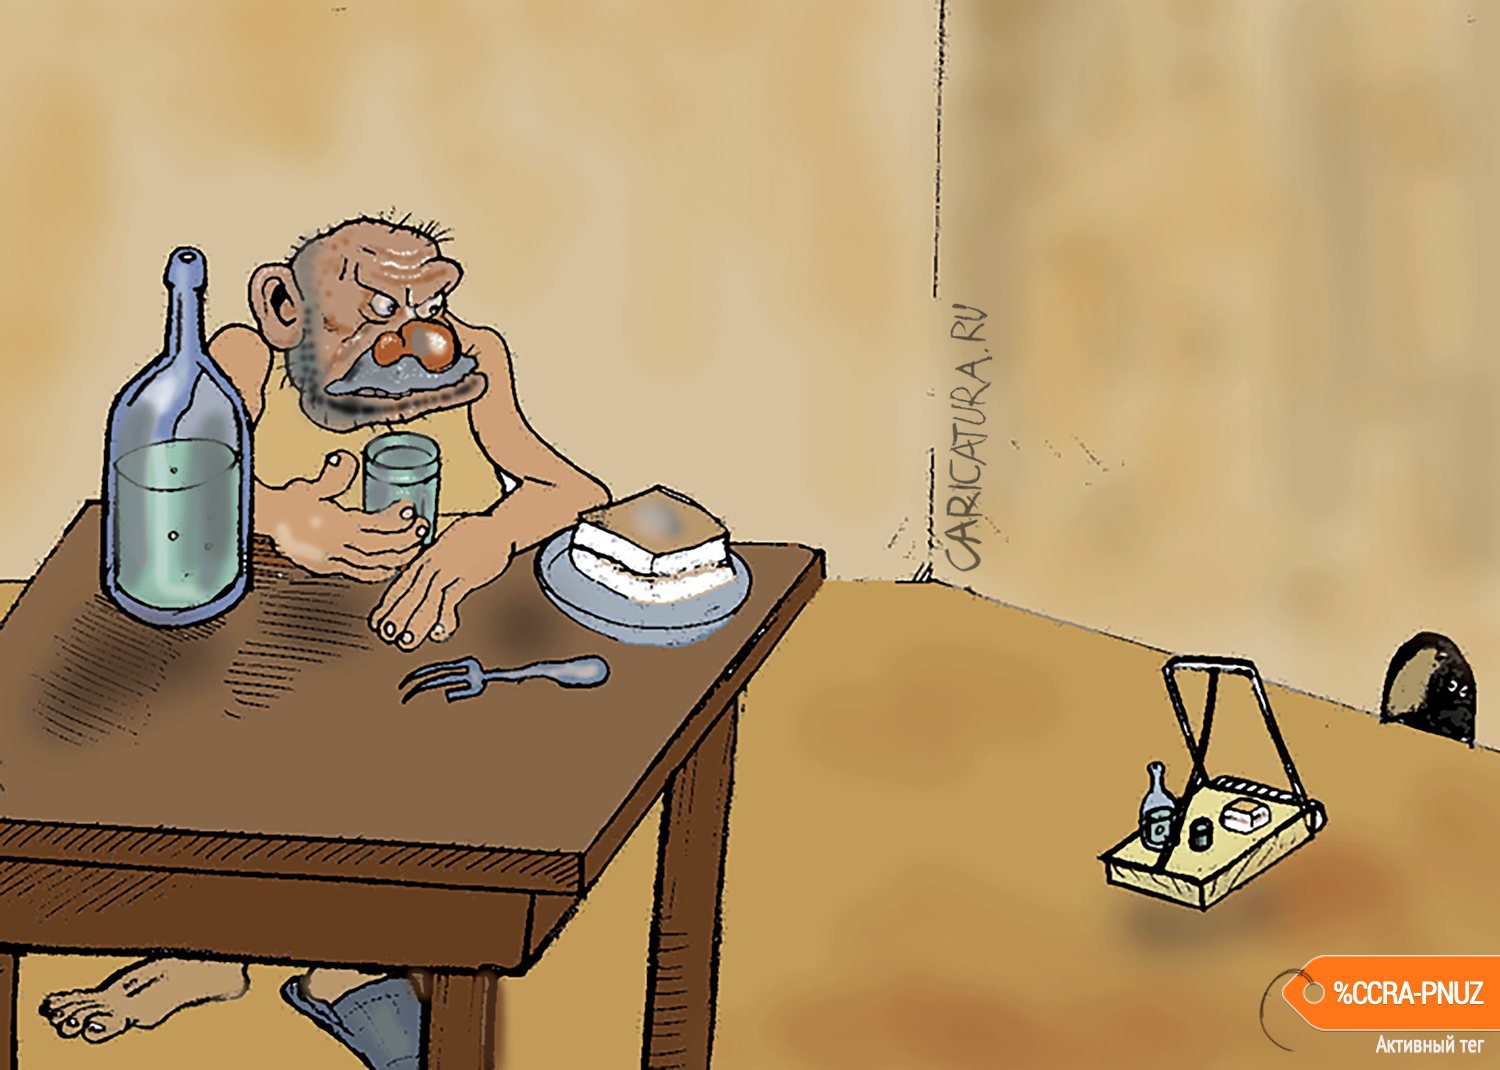 Карикатура "Приманка", Булат Ирсаев